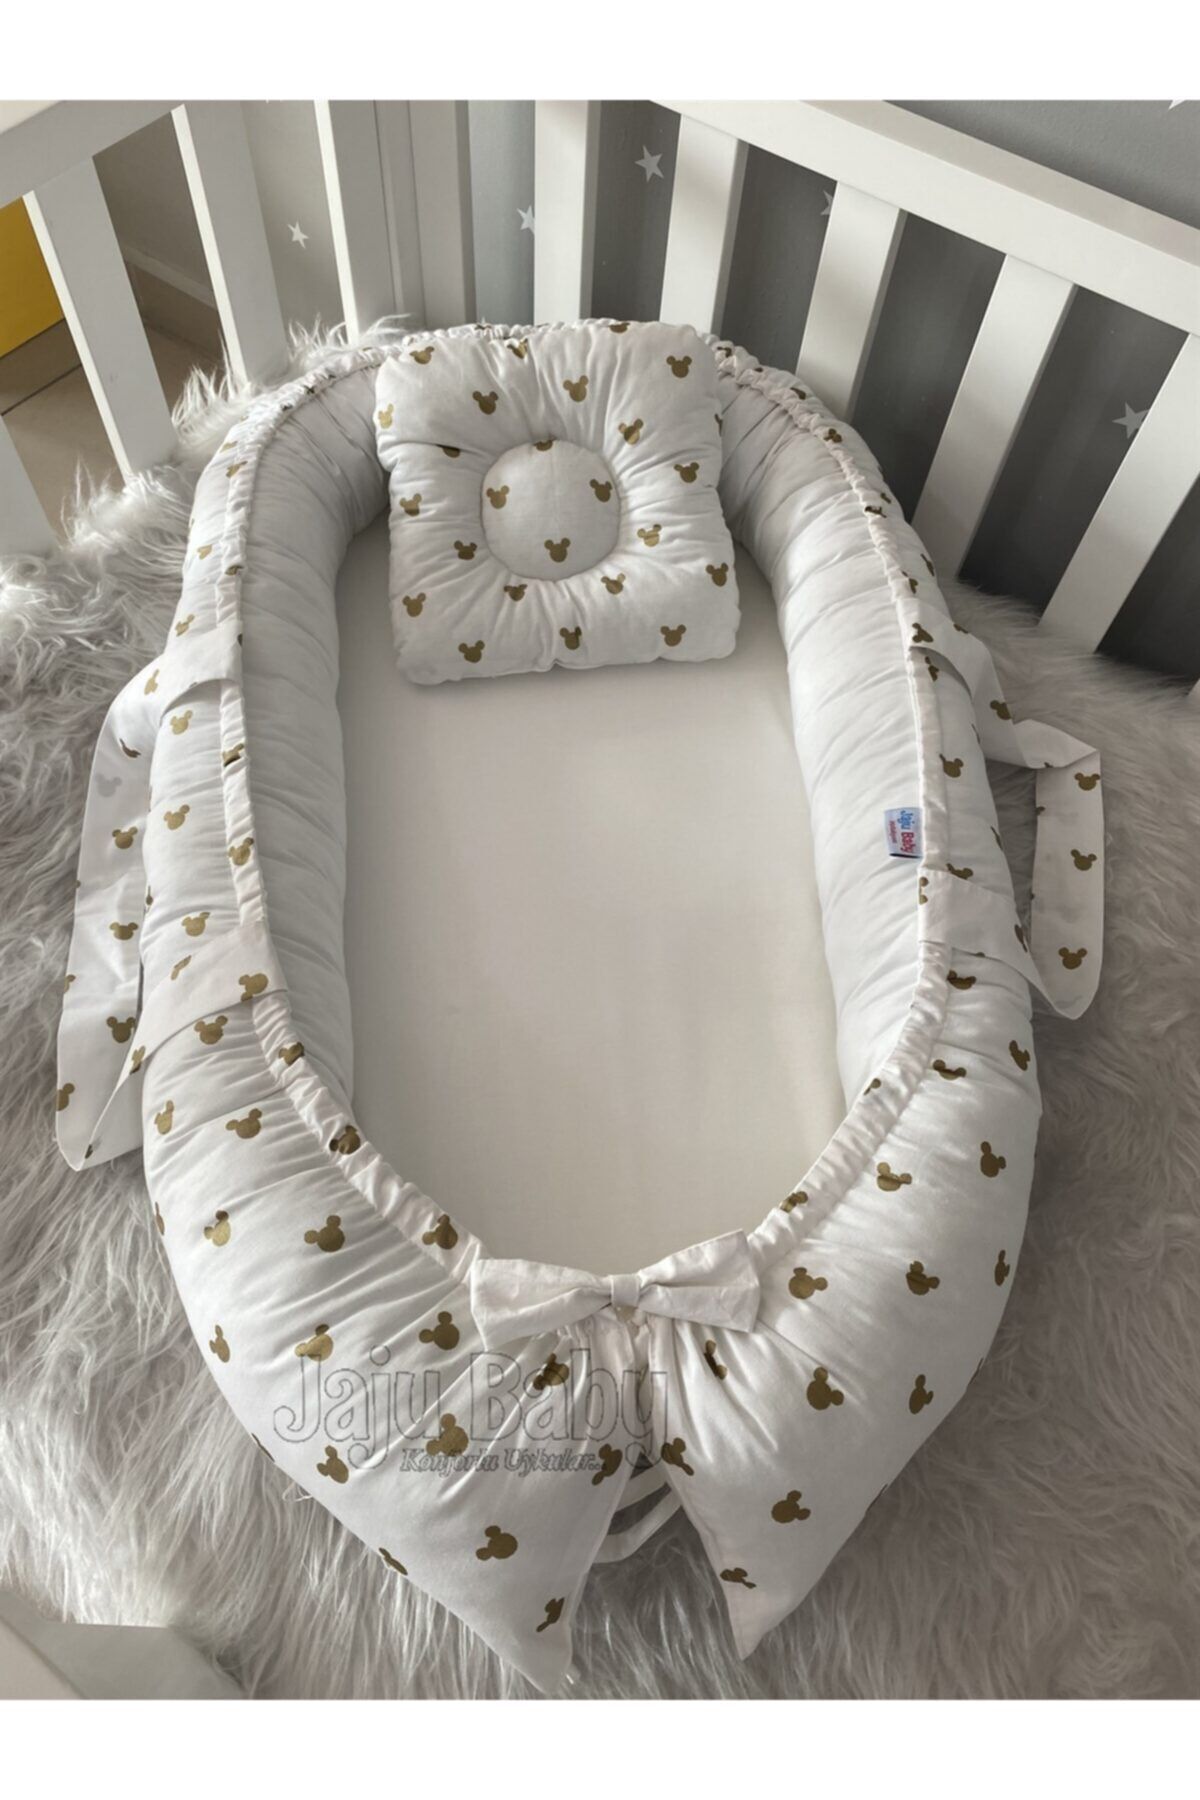 Jaju Baby Nest Gold Tasarım Lüx Tasarım Jaju-babynest Anne Yanı Bebek Yatağı